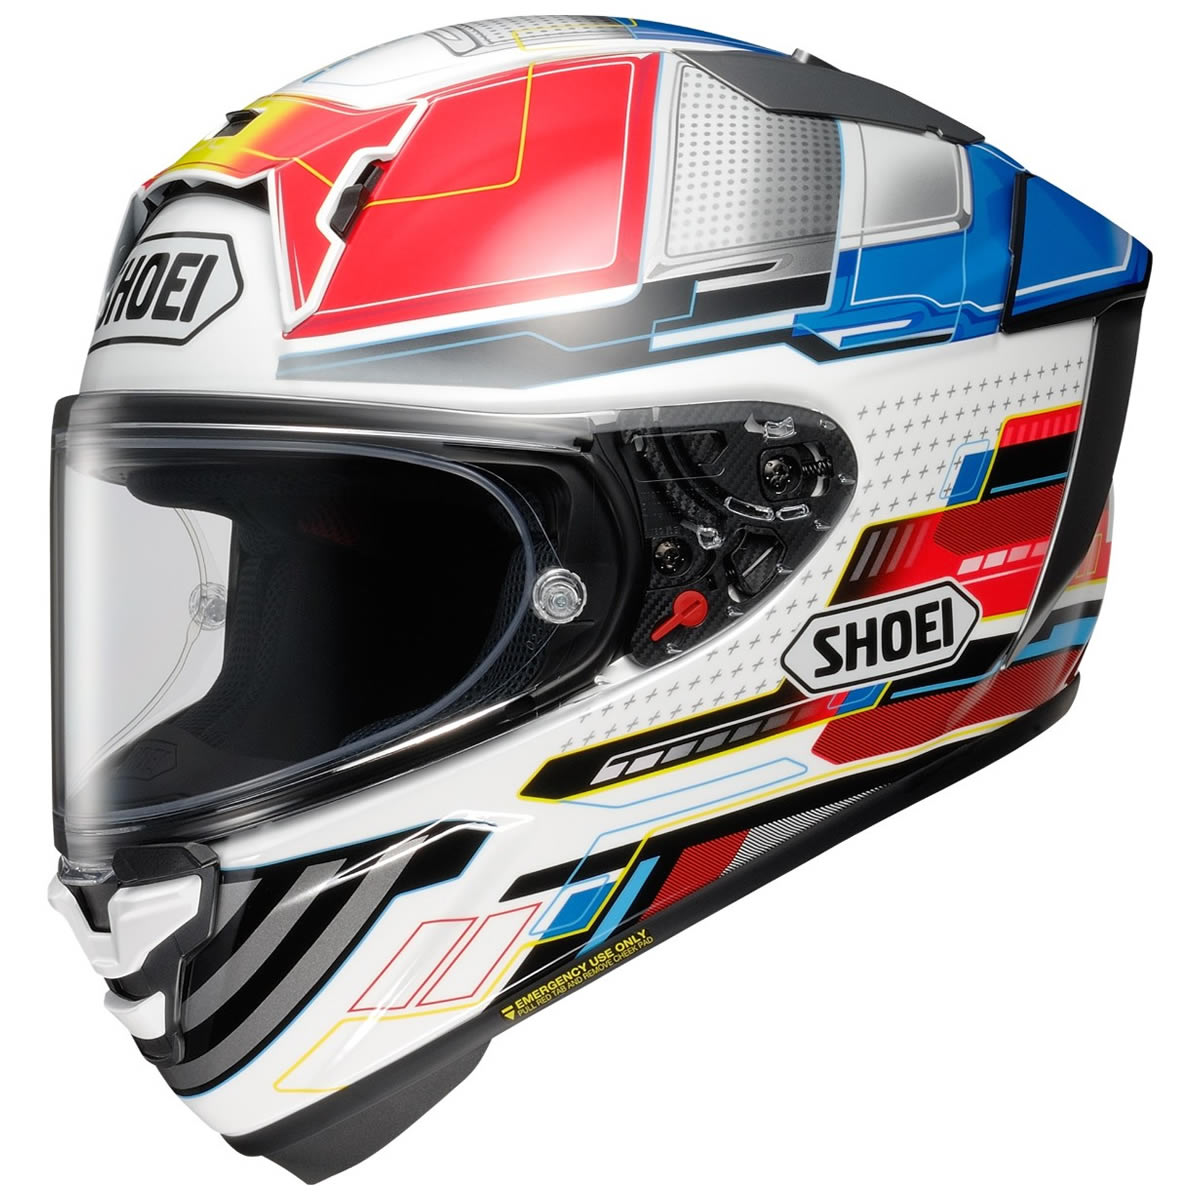 Shoei Helm X-SPR Pro Proxy, weiß-rot-blau